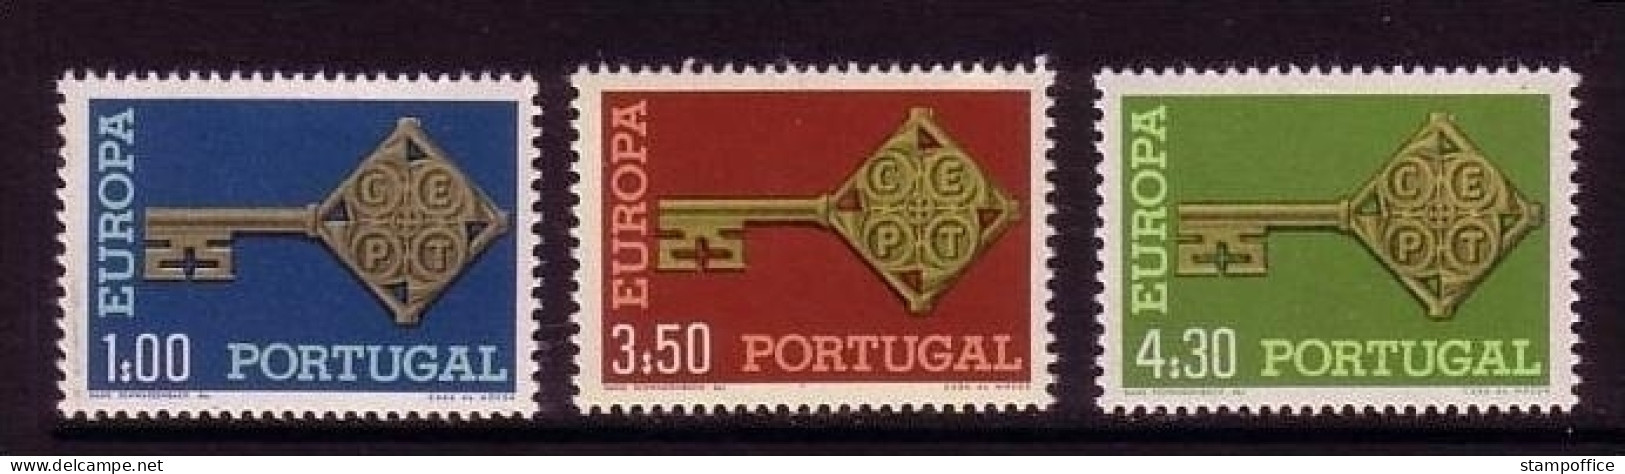 PORTUGAL MI-NR. 1051-1053 POSTFRISCH(MINT) EUROPA 1968 KREUZBARTSCHLÜSSEL - 1968